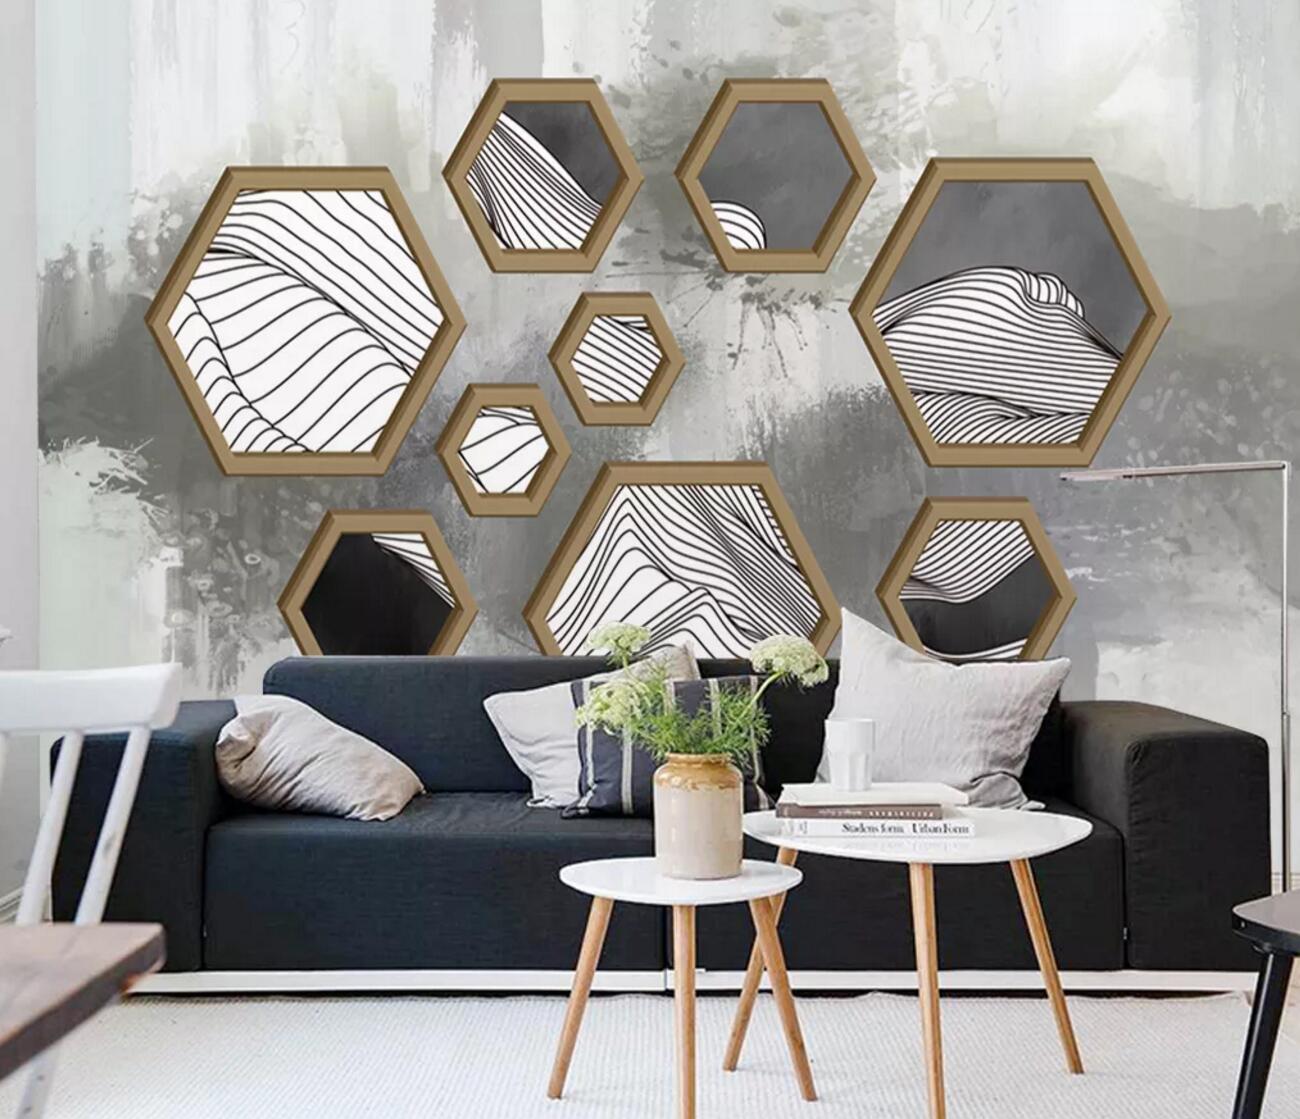 3D Hexagon Pattern WC1152 Wall Murals